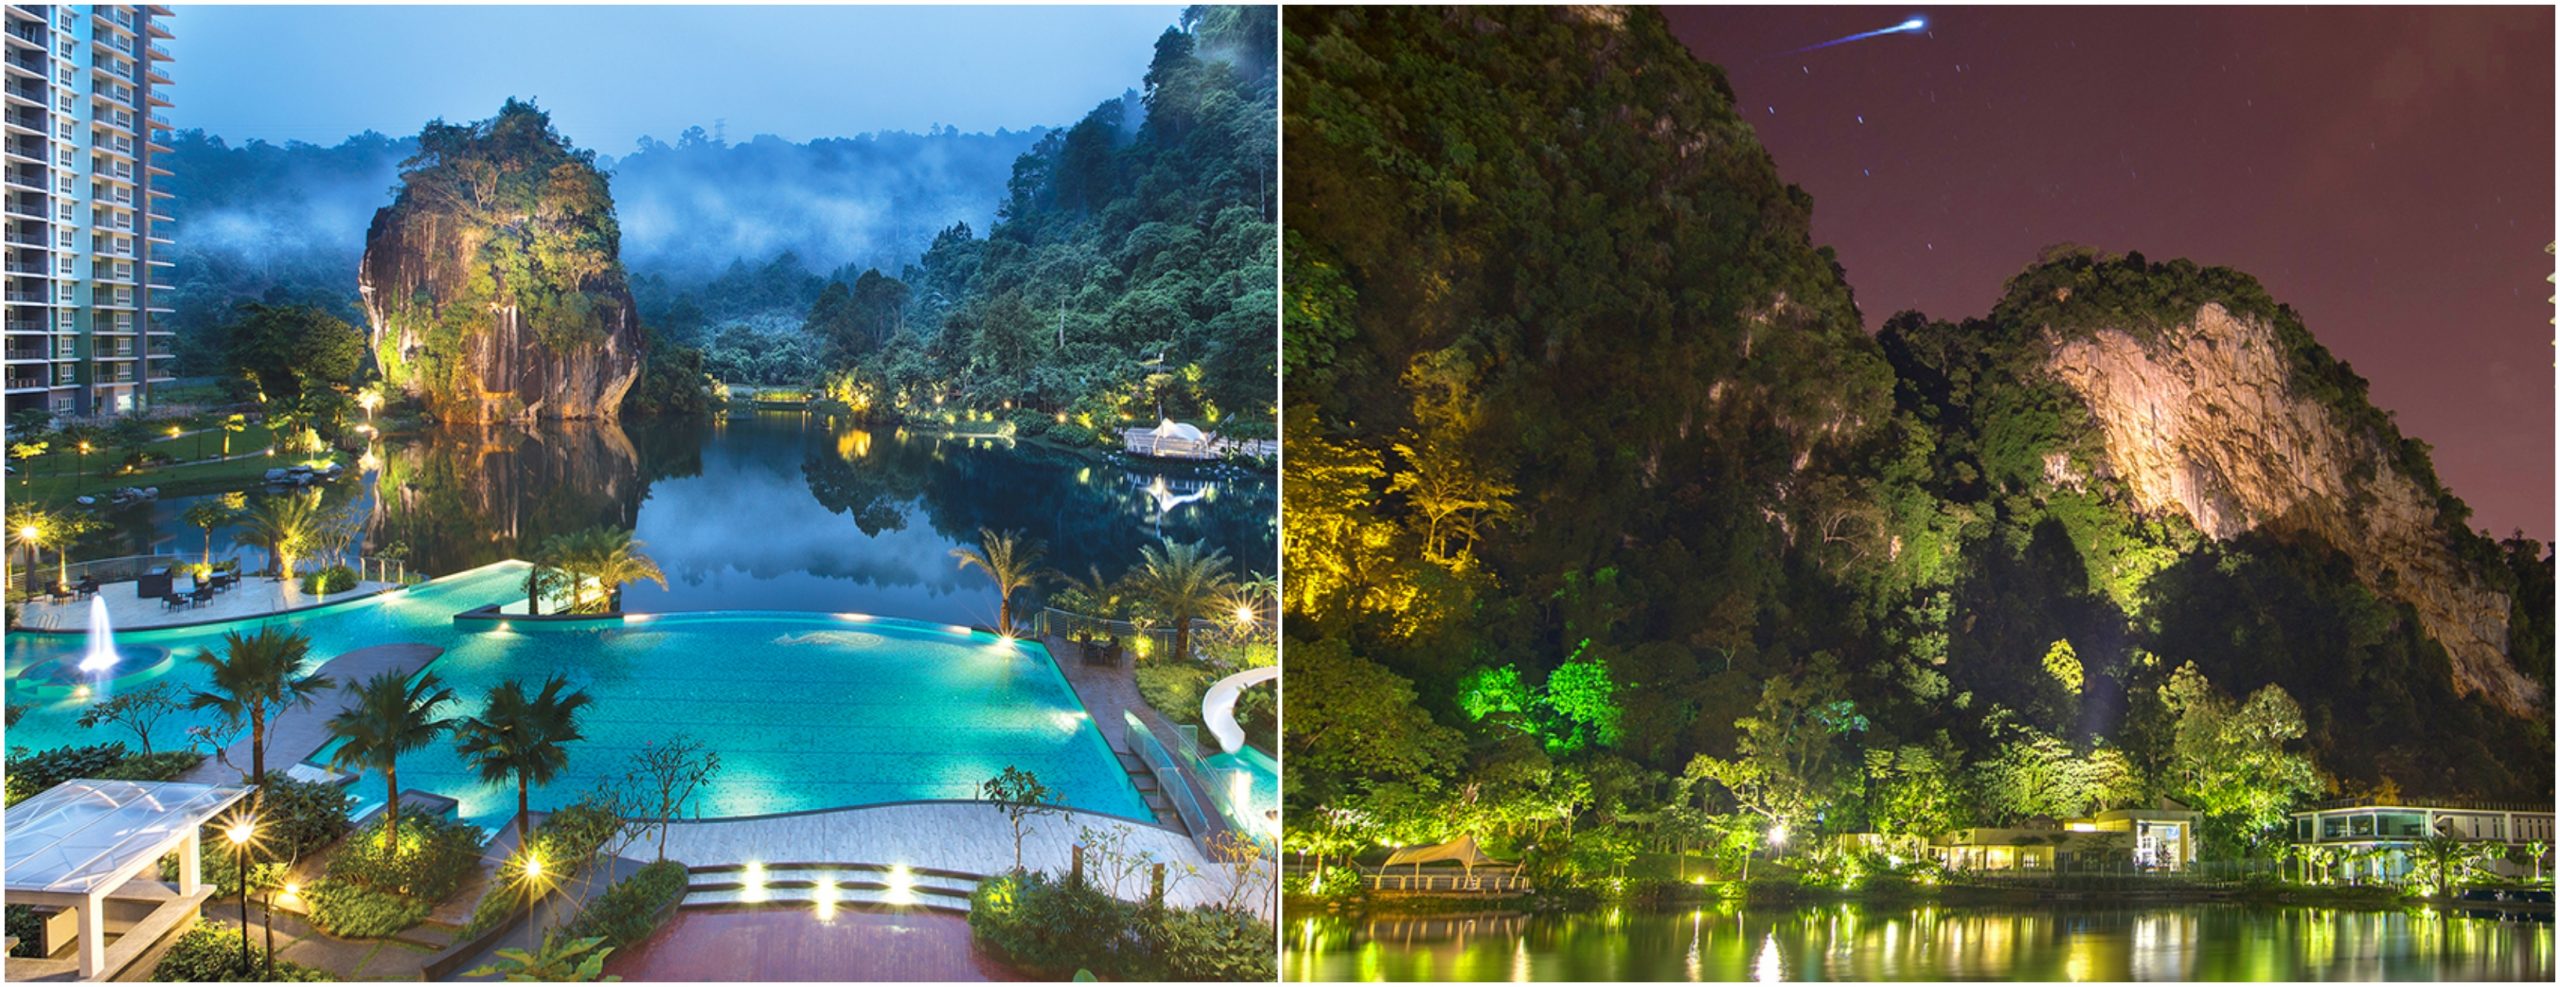 Boleh Layan View Tasik & Alam Semula Jadi, The Haven Resort Ni Buat Percutian Korang Jadi Lebih Indah!